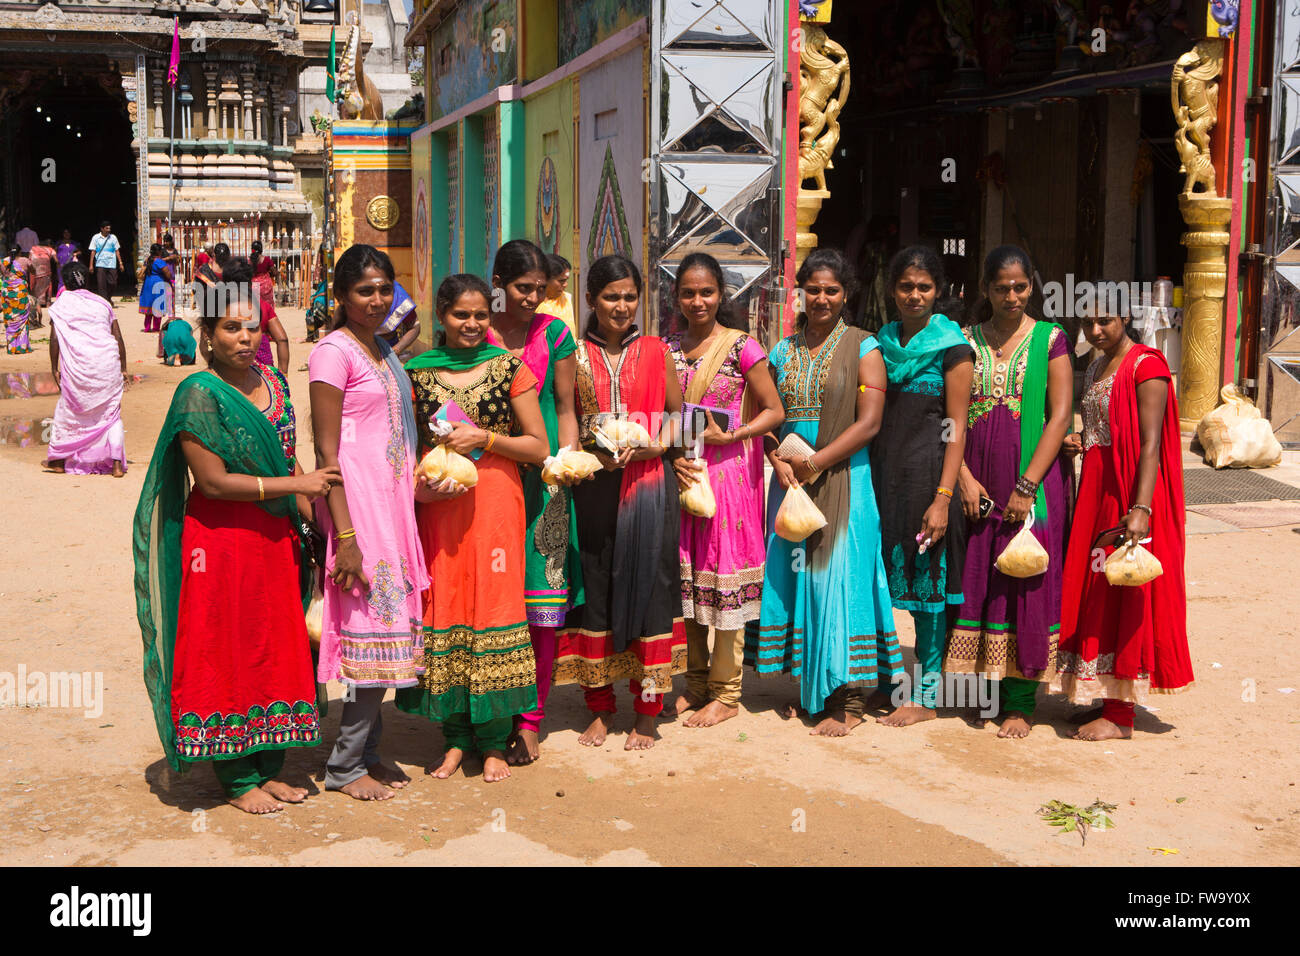 Sri Lanka, Trincomalee, Pillaiyar Kovil Tempel gut gekleidet Frauen in bunten Saris am Eingang Stockfoto